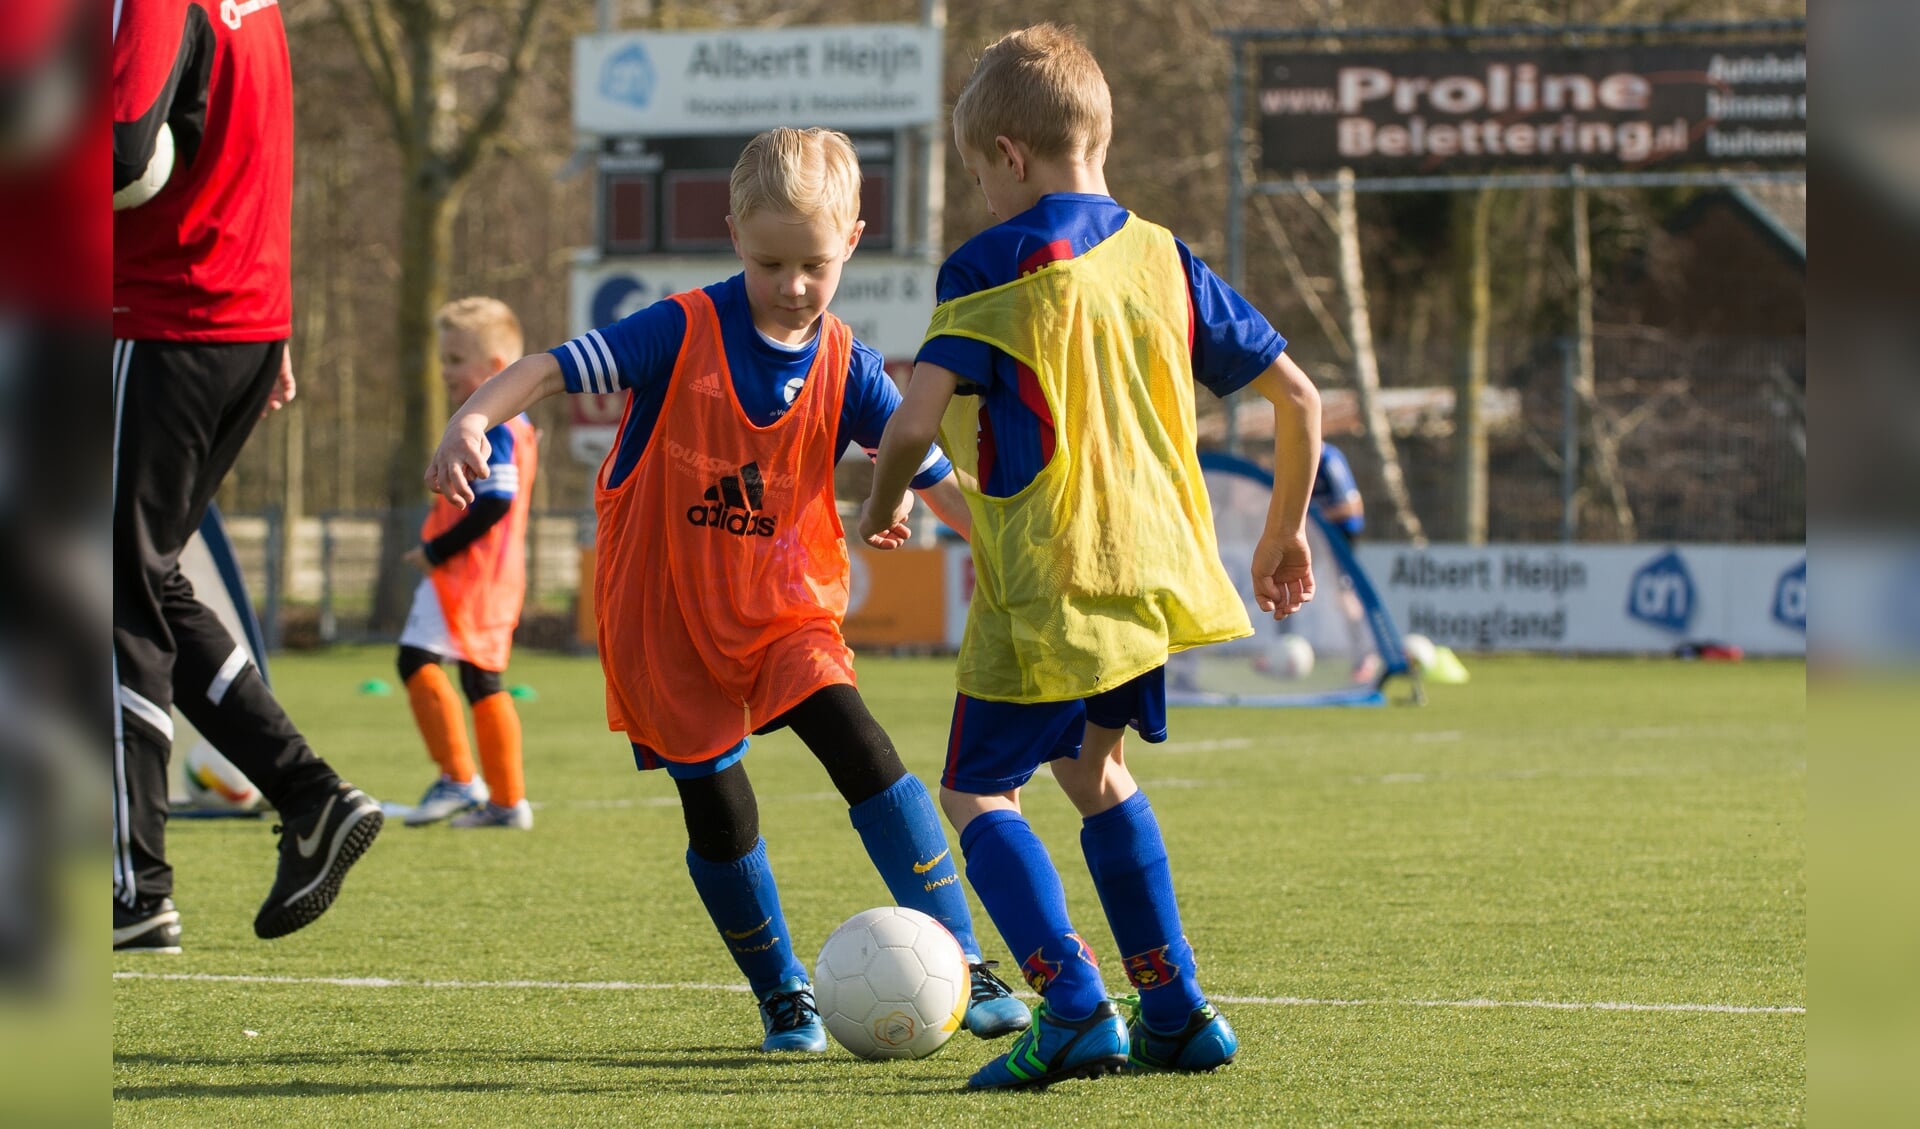 Trainen bij De Voetbalschool - Amsvorde.